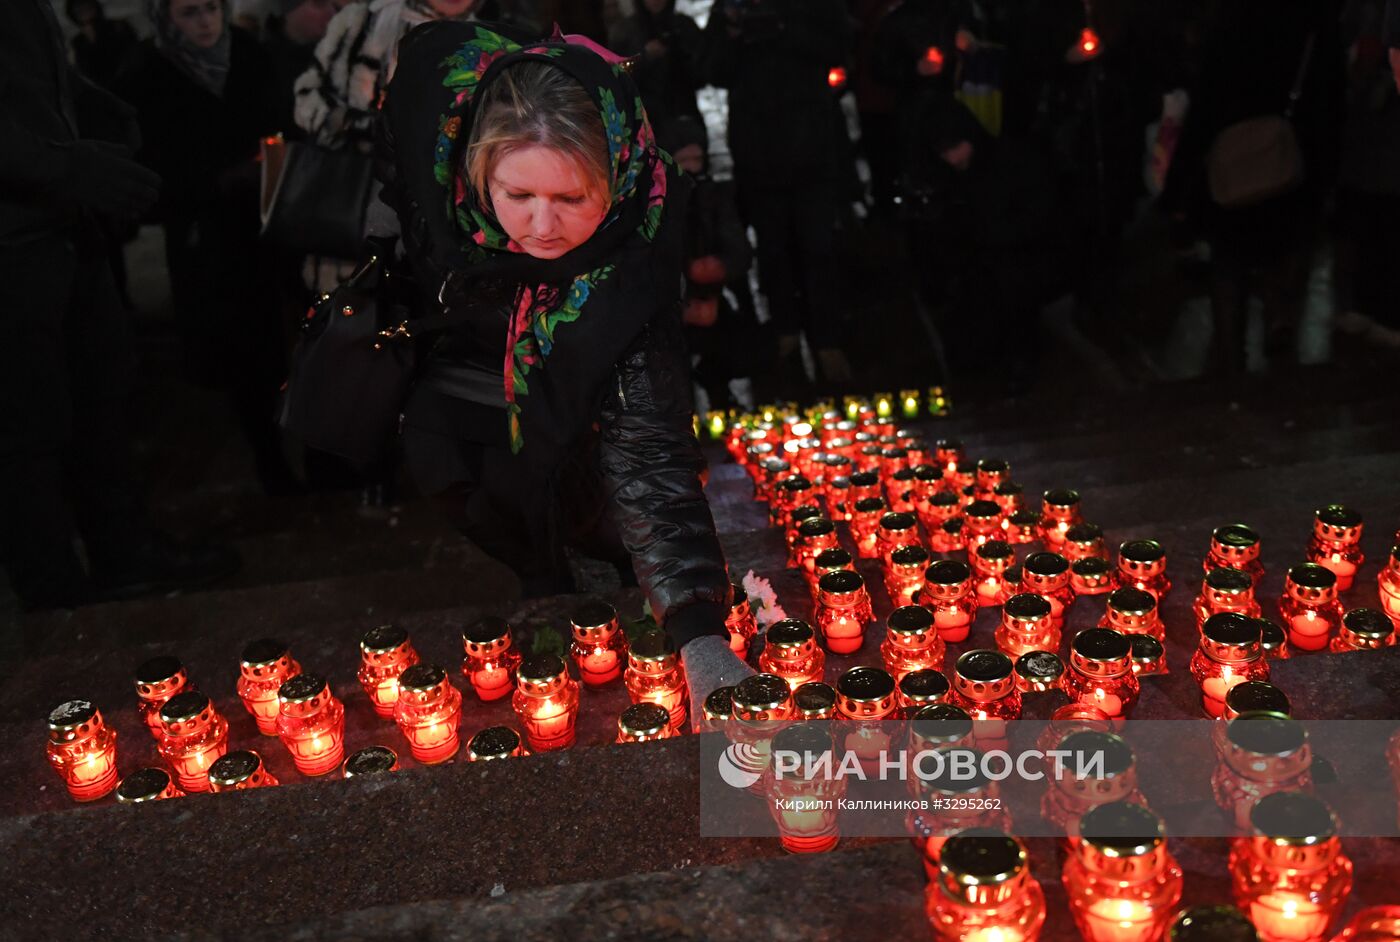 Акция памяти по погибшим в авиакатастрофе в Подмосковье